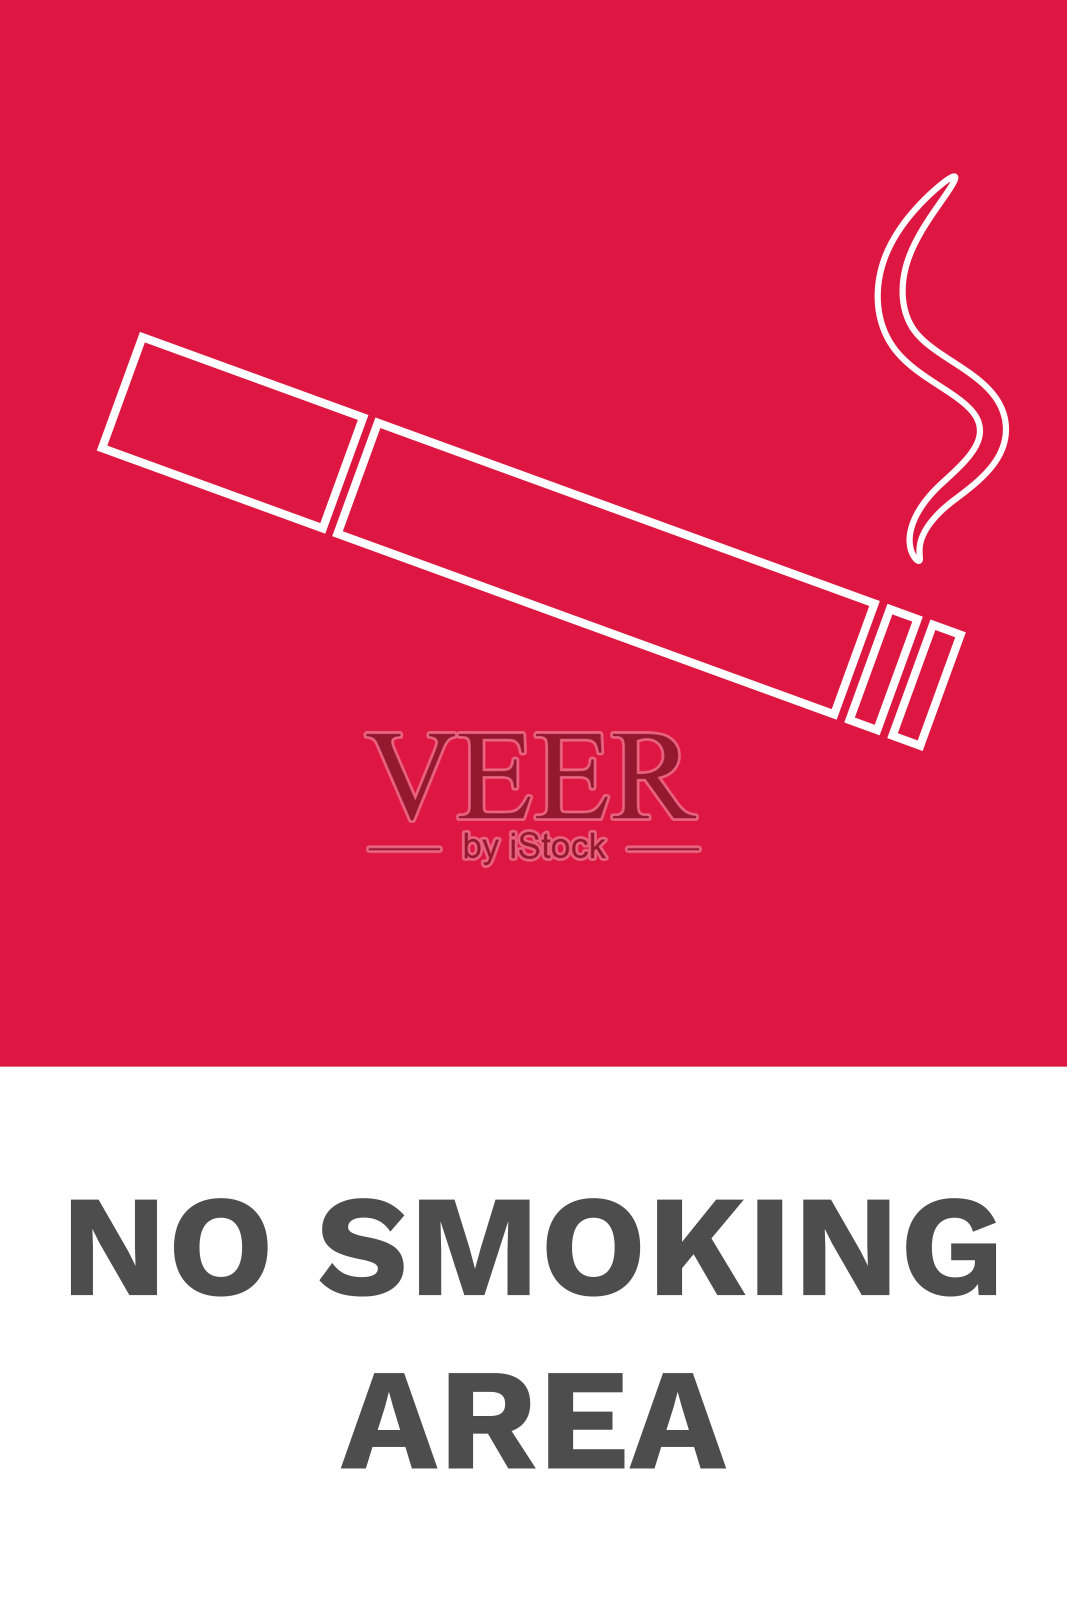 禁止吸烟区垂直标志。向量插画图片素材